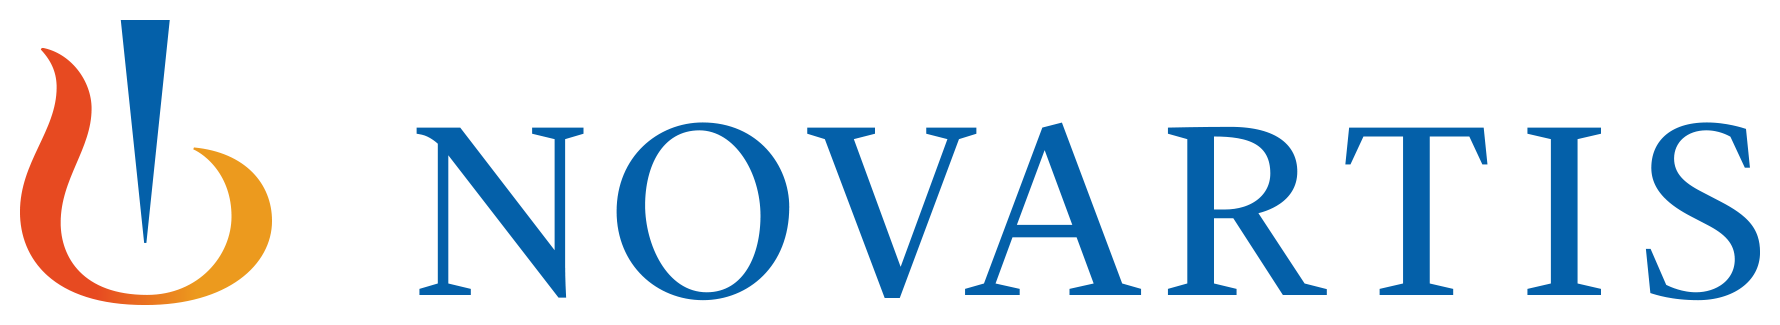 Novartis logo coloured